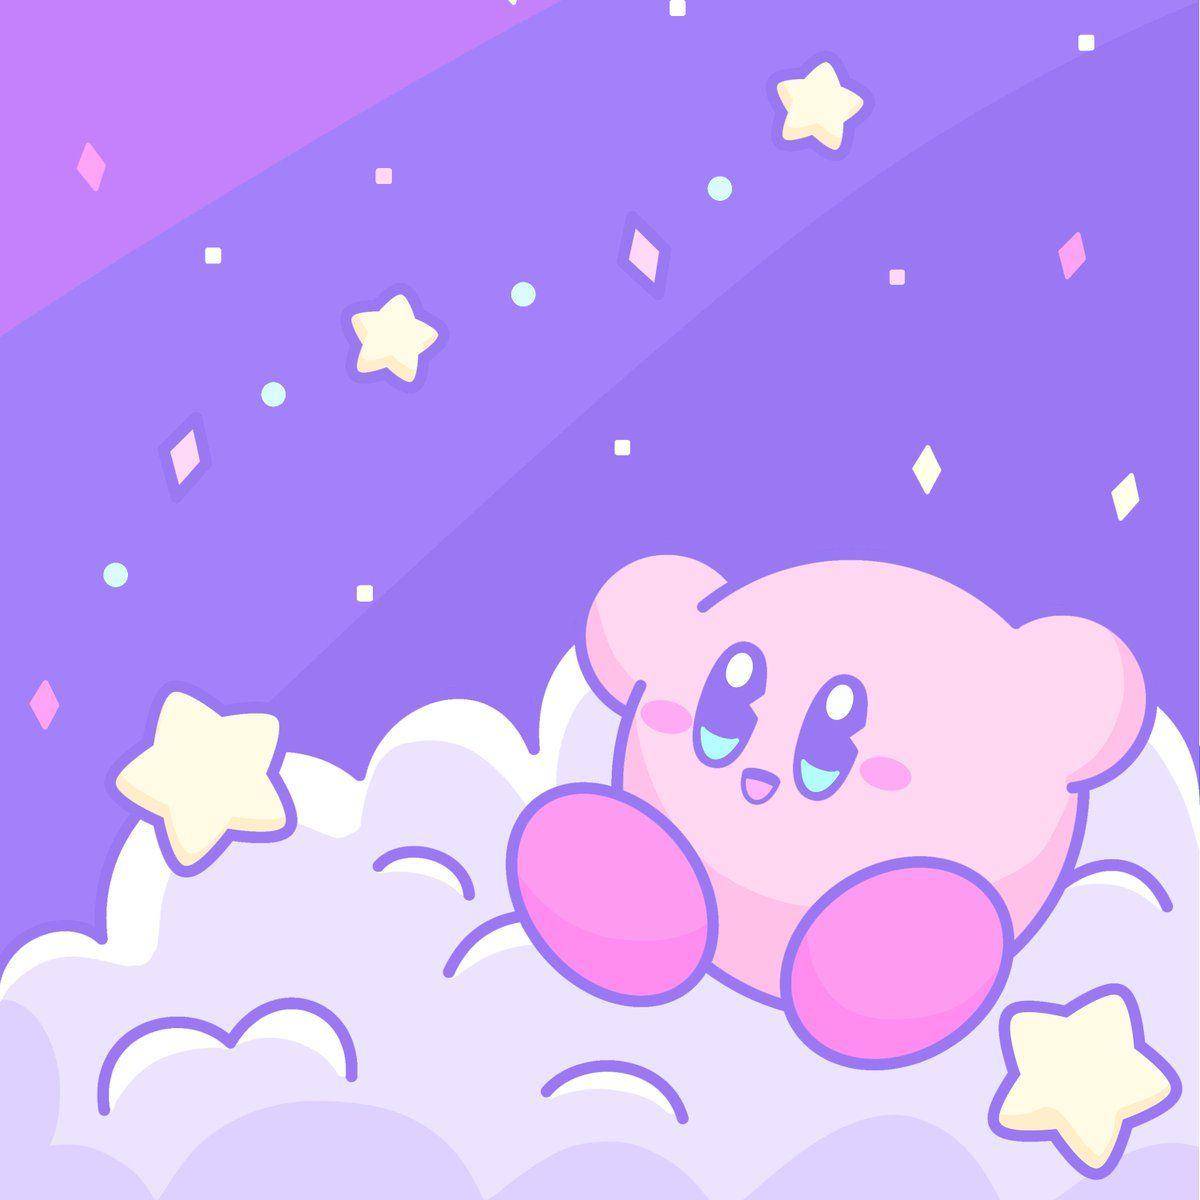 Hãy chiêm ngưỡng một họa tiết nền màu tím tuyệt đẹp với hình ảnh Kirby trong trò chơi giải đố kỳ diệu này. Không chỉ đơn thuần là một hình nền, nó còn mang lại cảm giác thoải mái và thu hút mọi ánh nhìn của bạn. Để mọi người cùng thưởng thức hình ảnh này nhé!